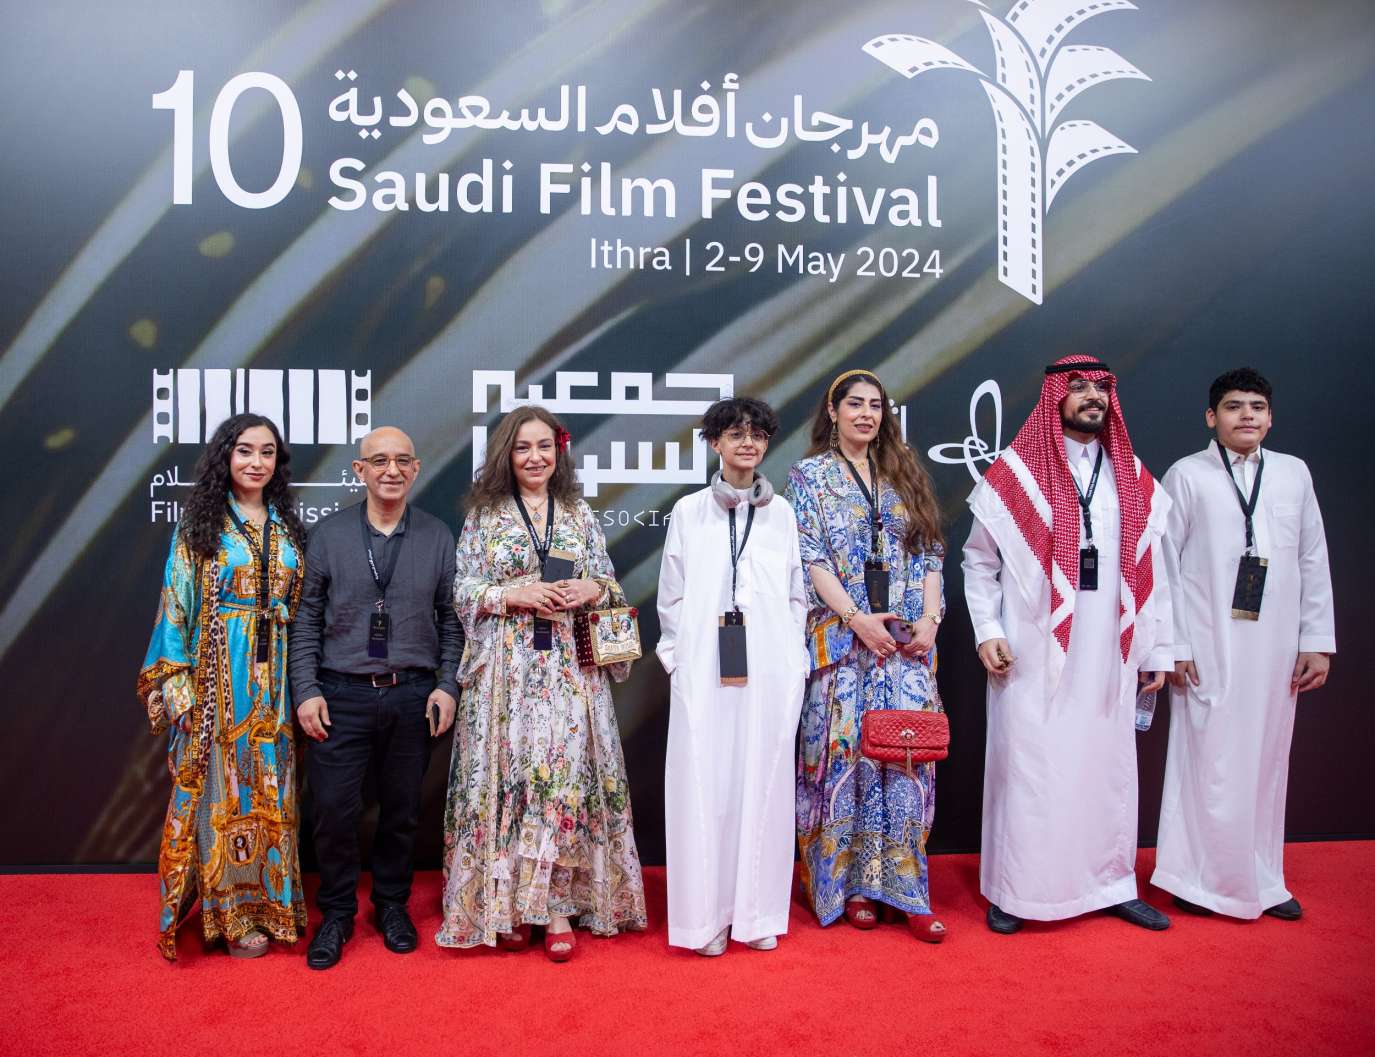 اللقطات الأولى للنجوم بختام مهرجان أفلام السعودية